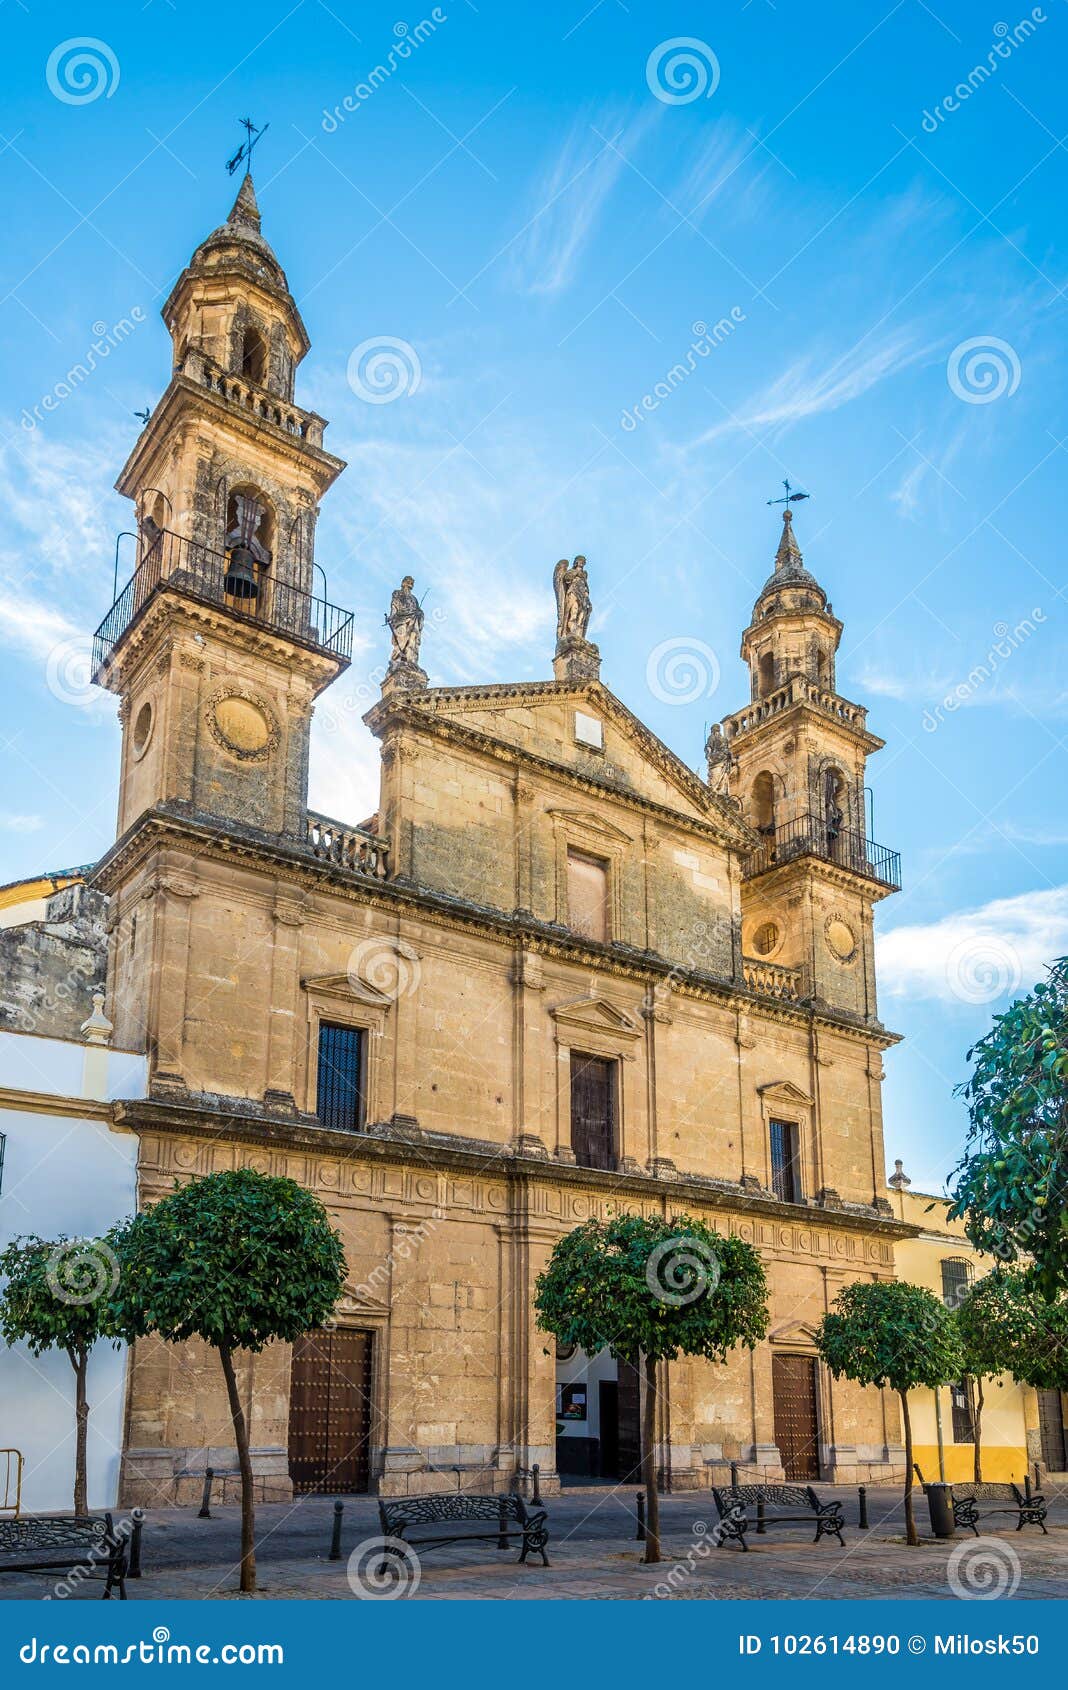 view at the church juramento de san rafael in cordoba, spain